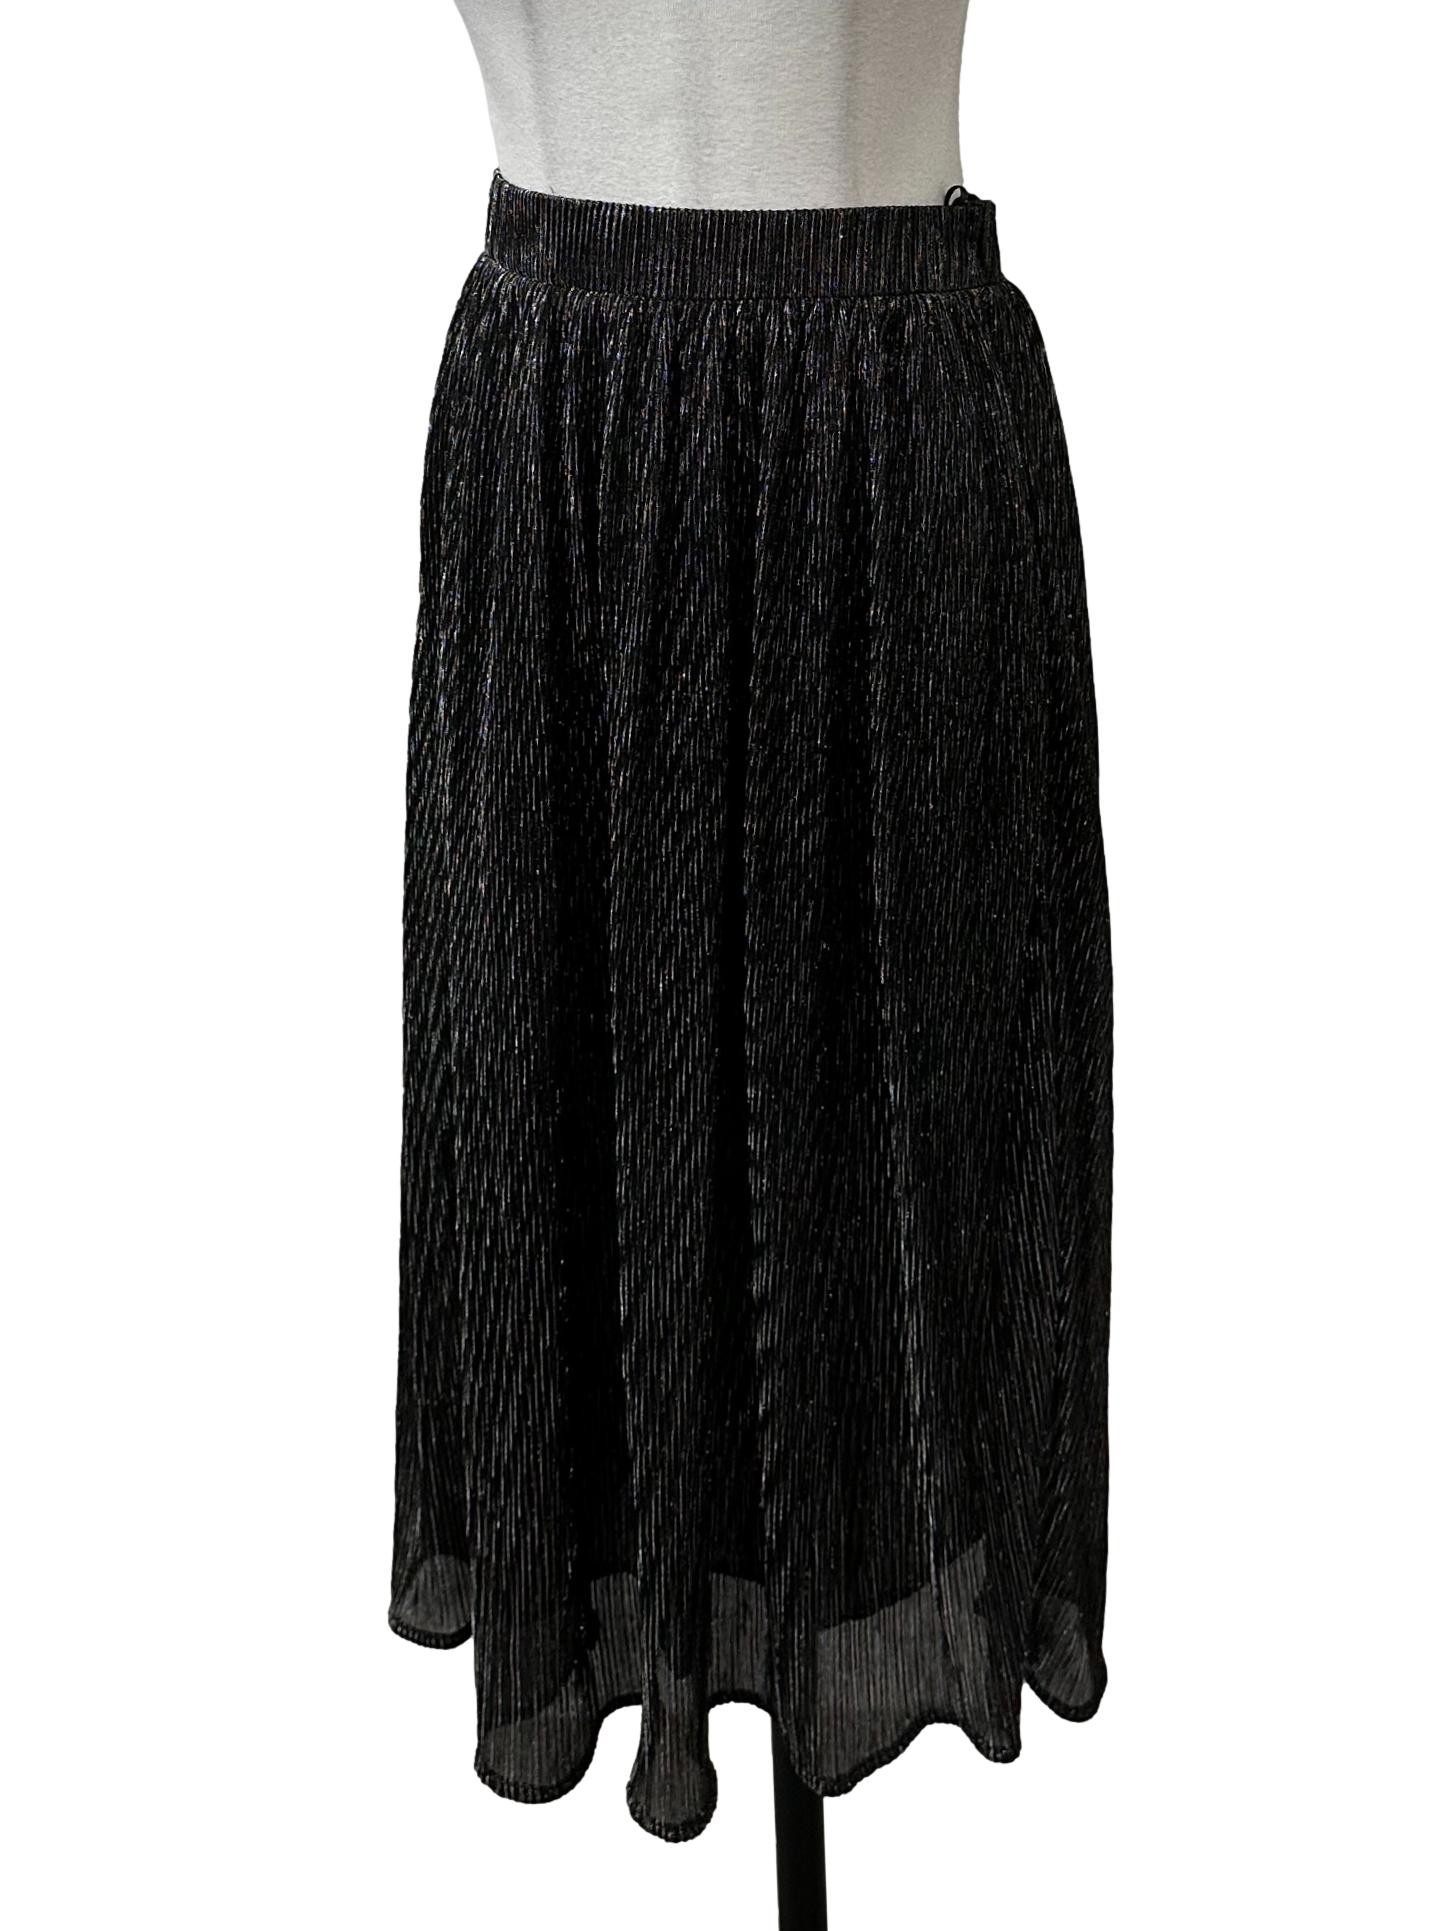 Black Shimmery Tube Skirt